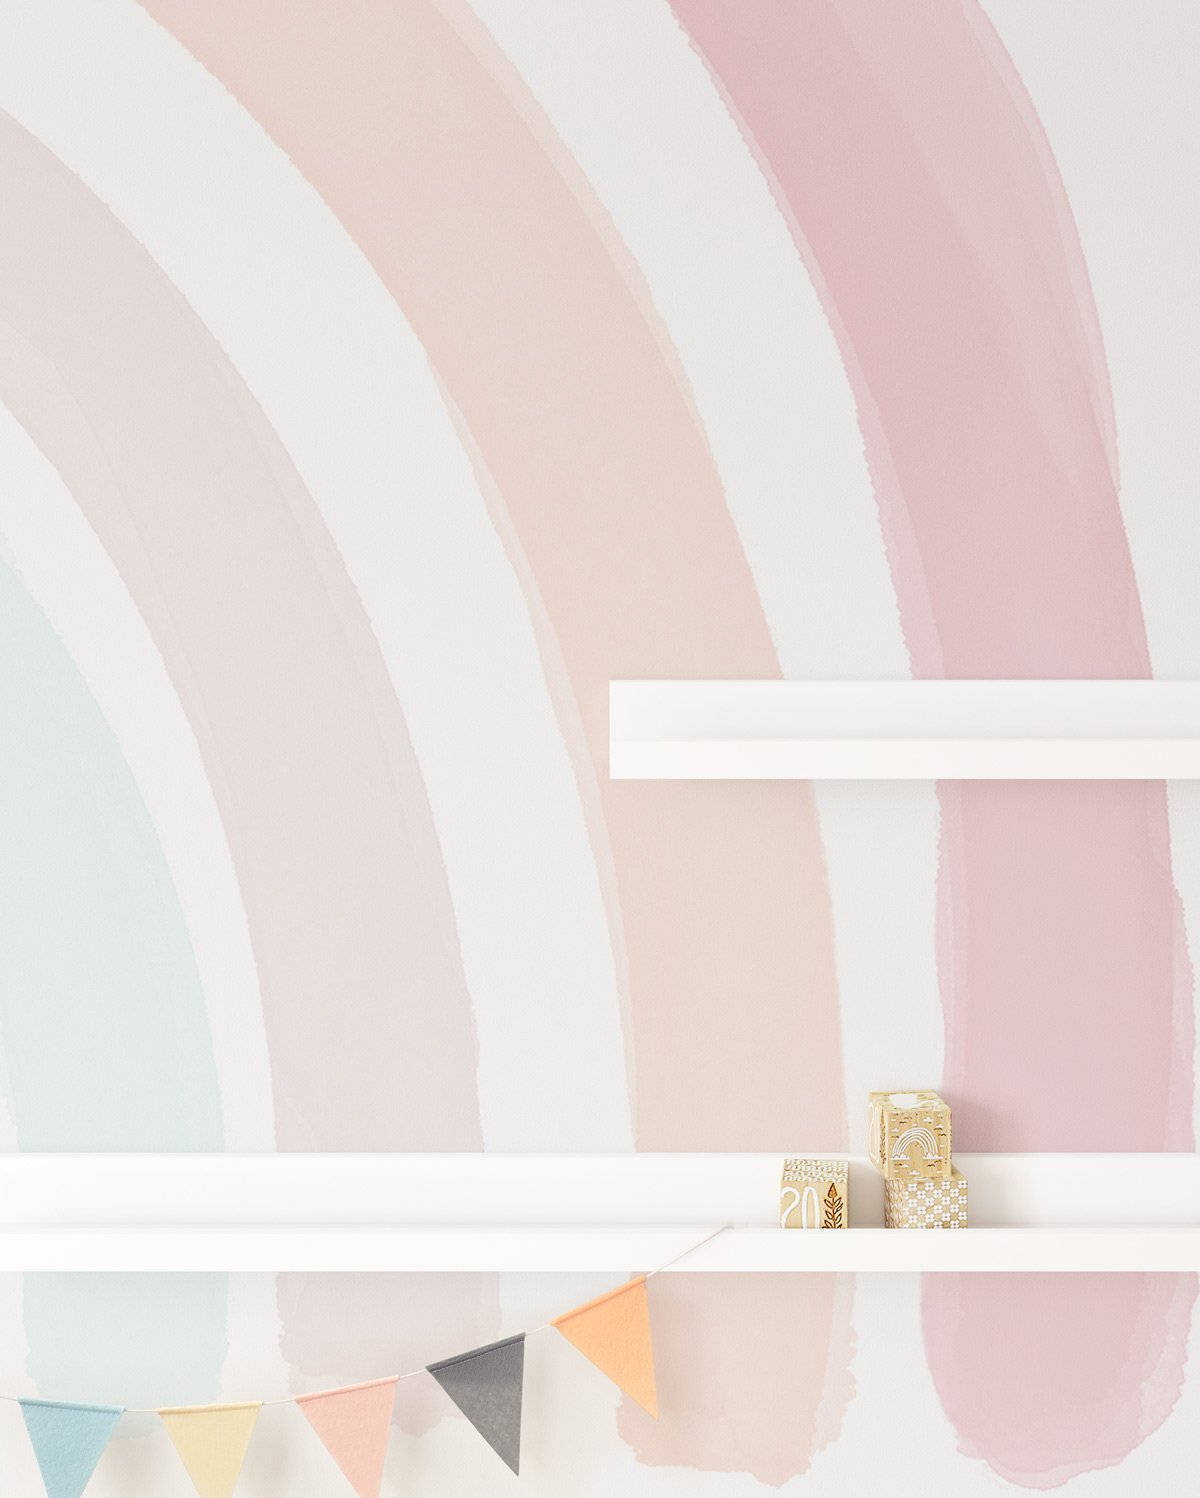 Et værelse med en regnbue vægmaling. Wallpaper